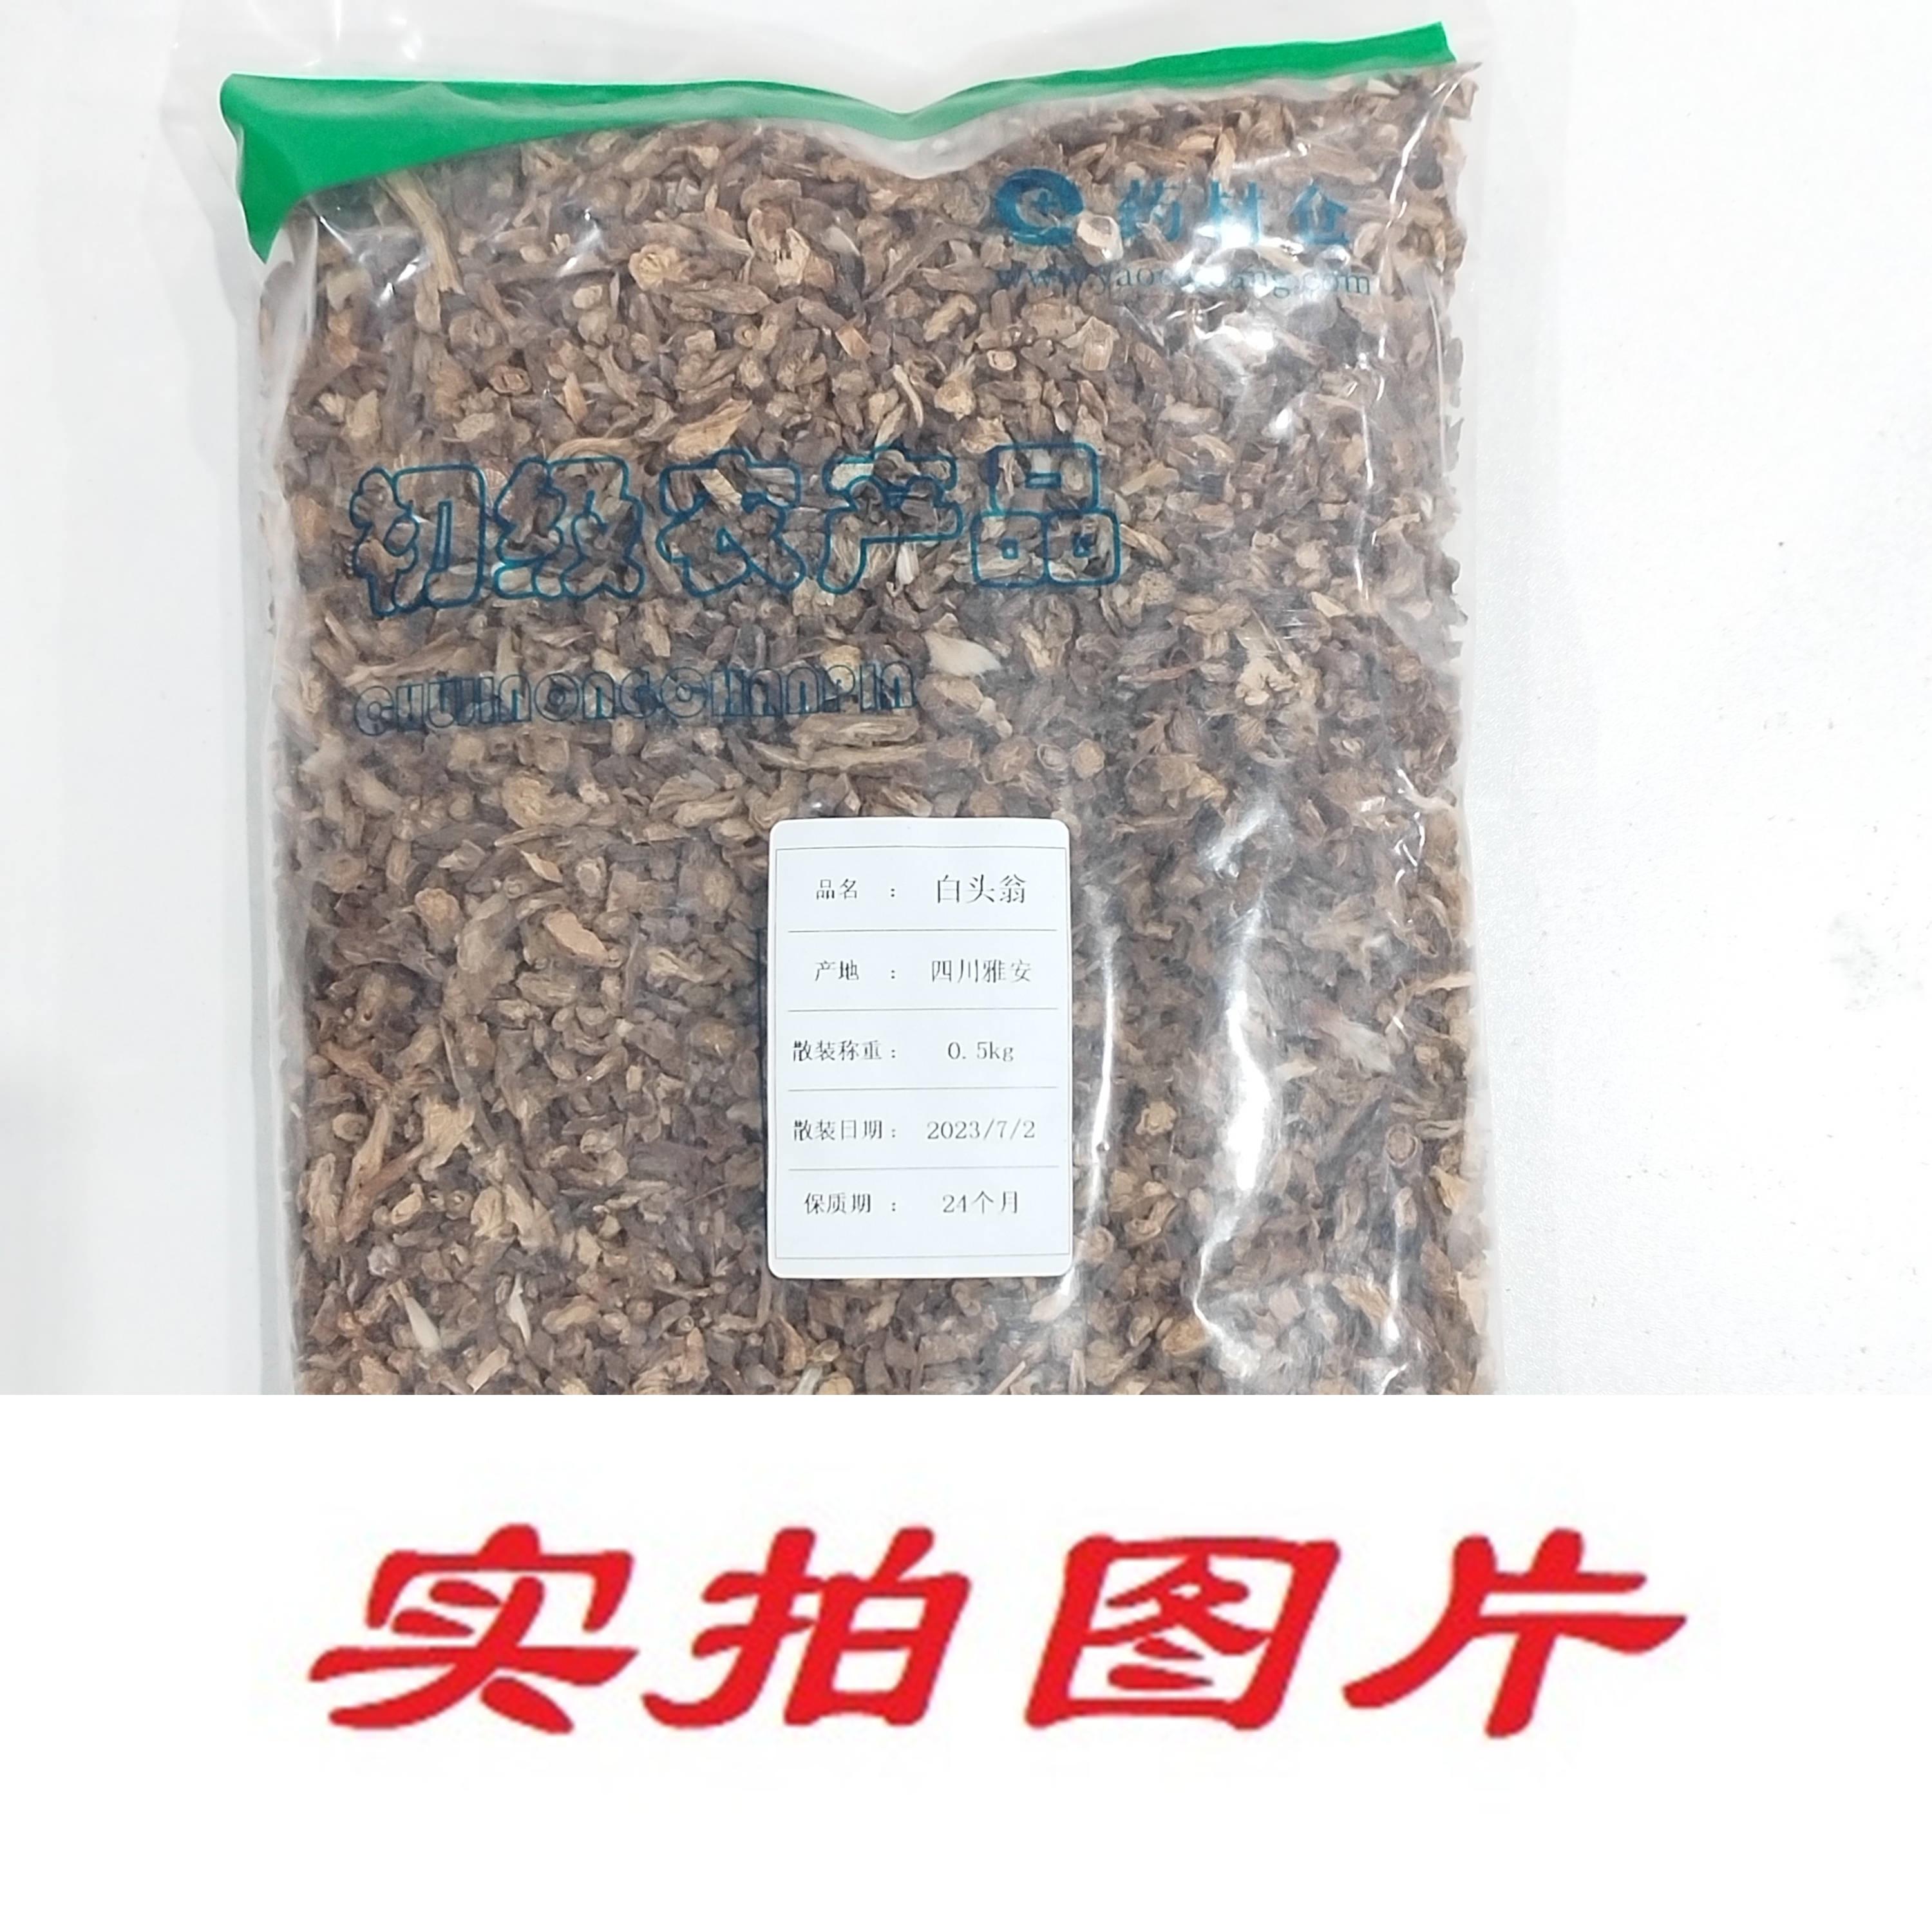 【】白头翁0.5kg-农副产品